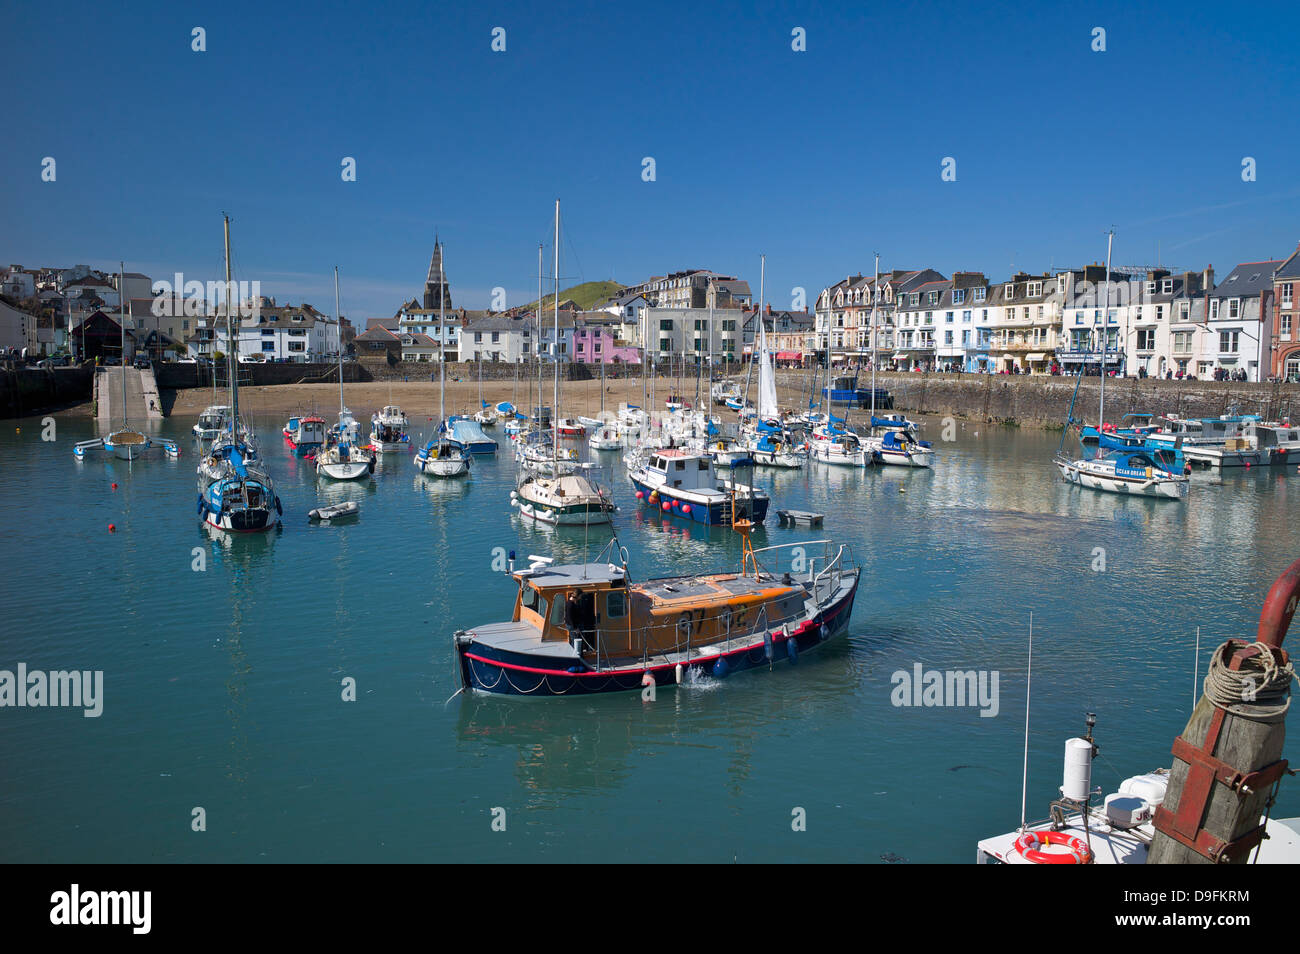 The Harbour, Ilfracombe, Devon, England, UK Stock Photo